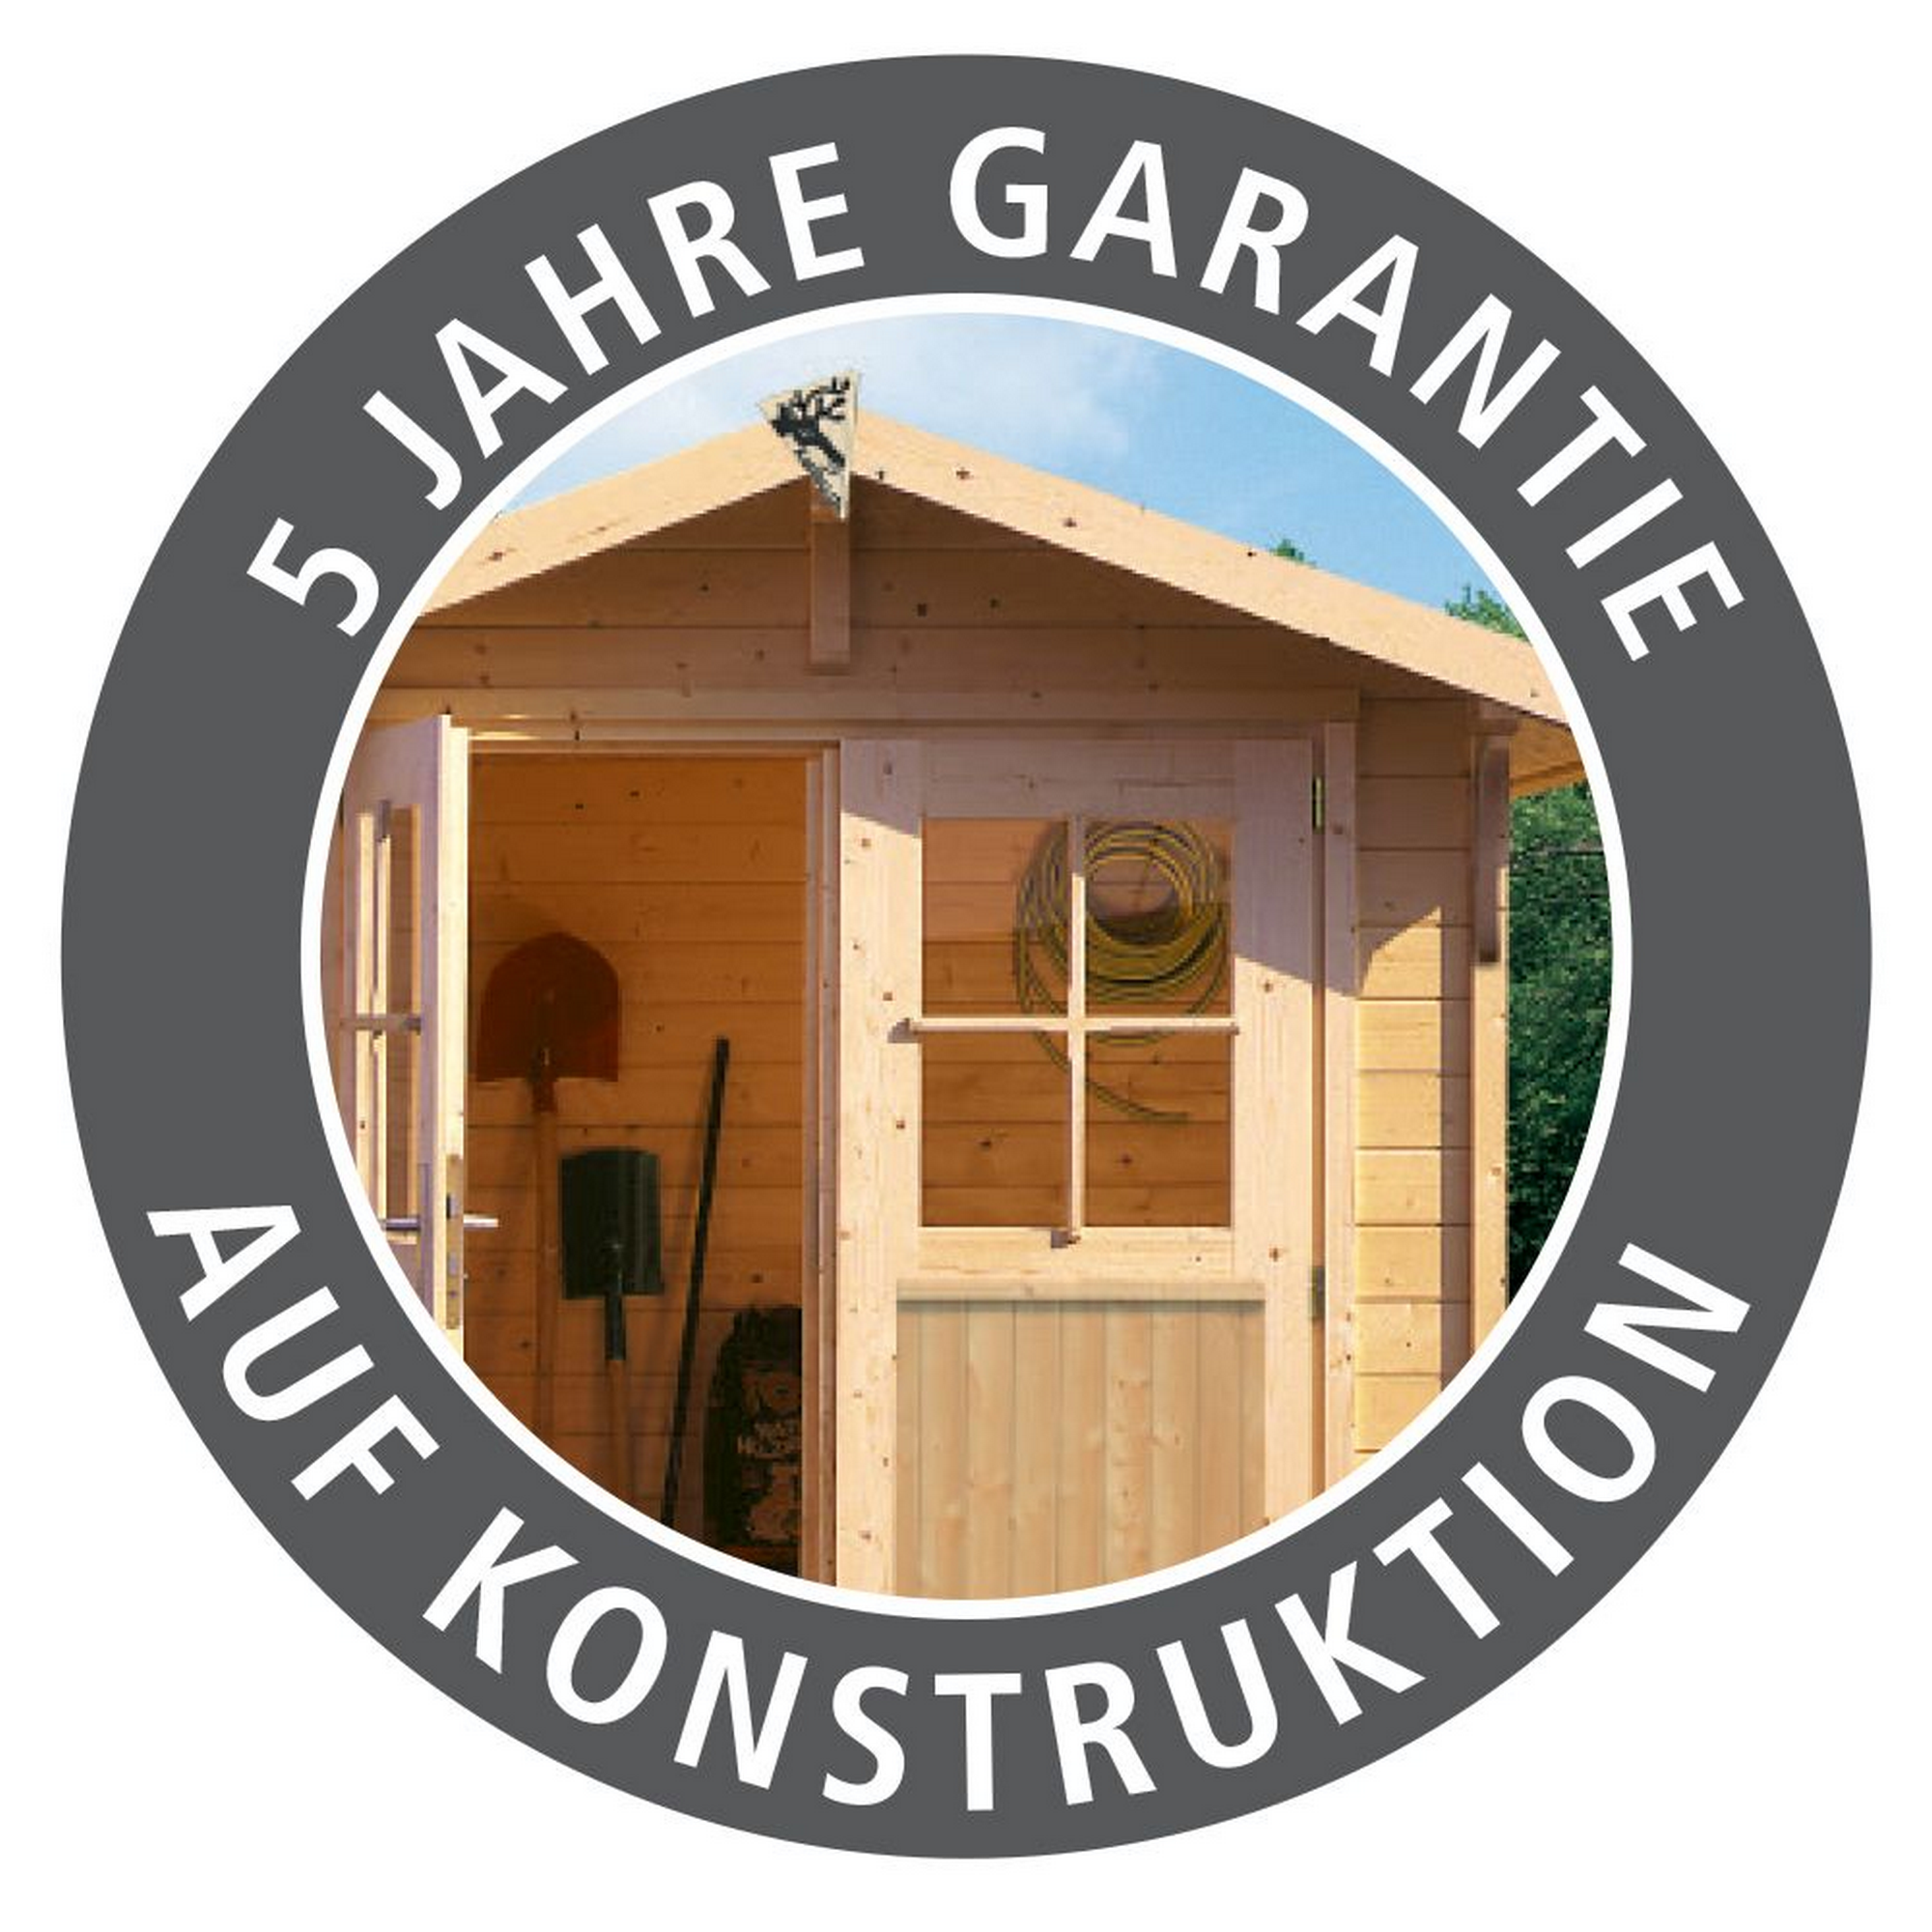 Gartenhaus mit Sauna 'Enrique 1 Variante A' anthrazit 308 x 308 x 242 cm + product picture